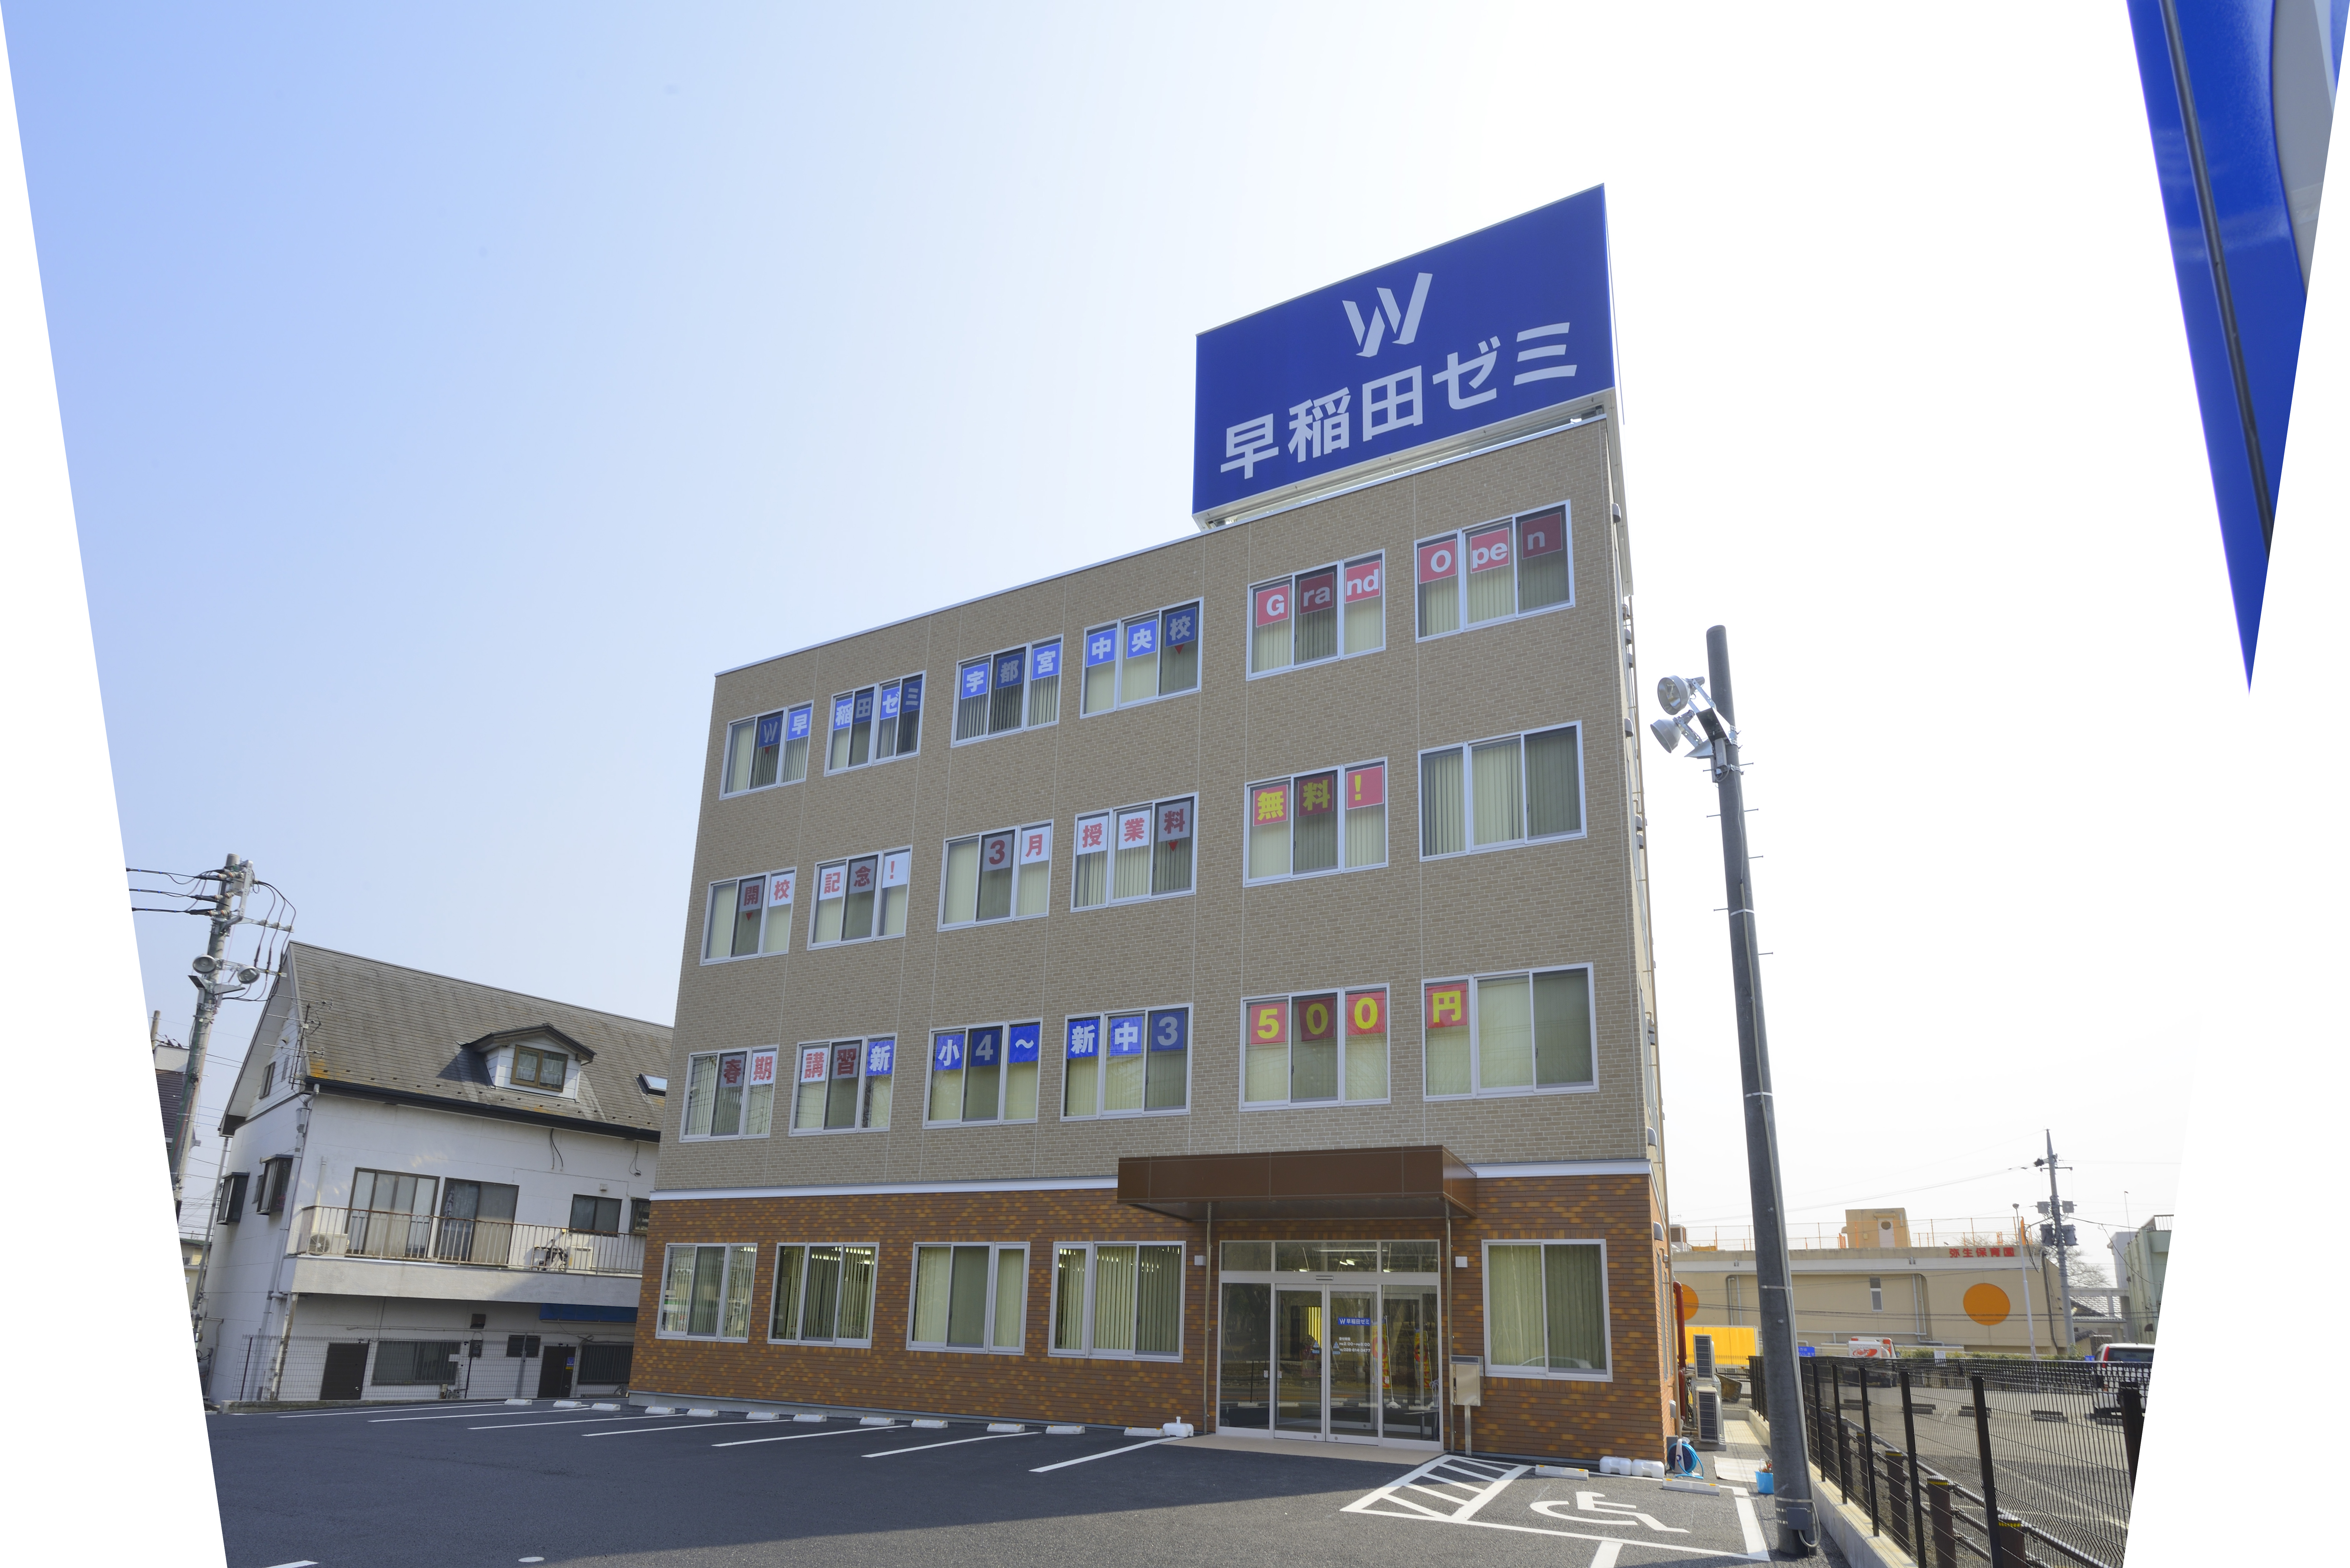 W早稲田ゼミ‗宇都宮中央校の校舎外観